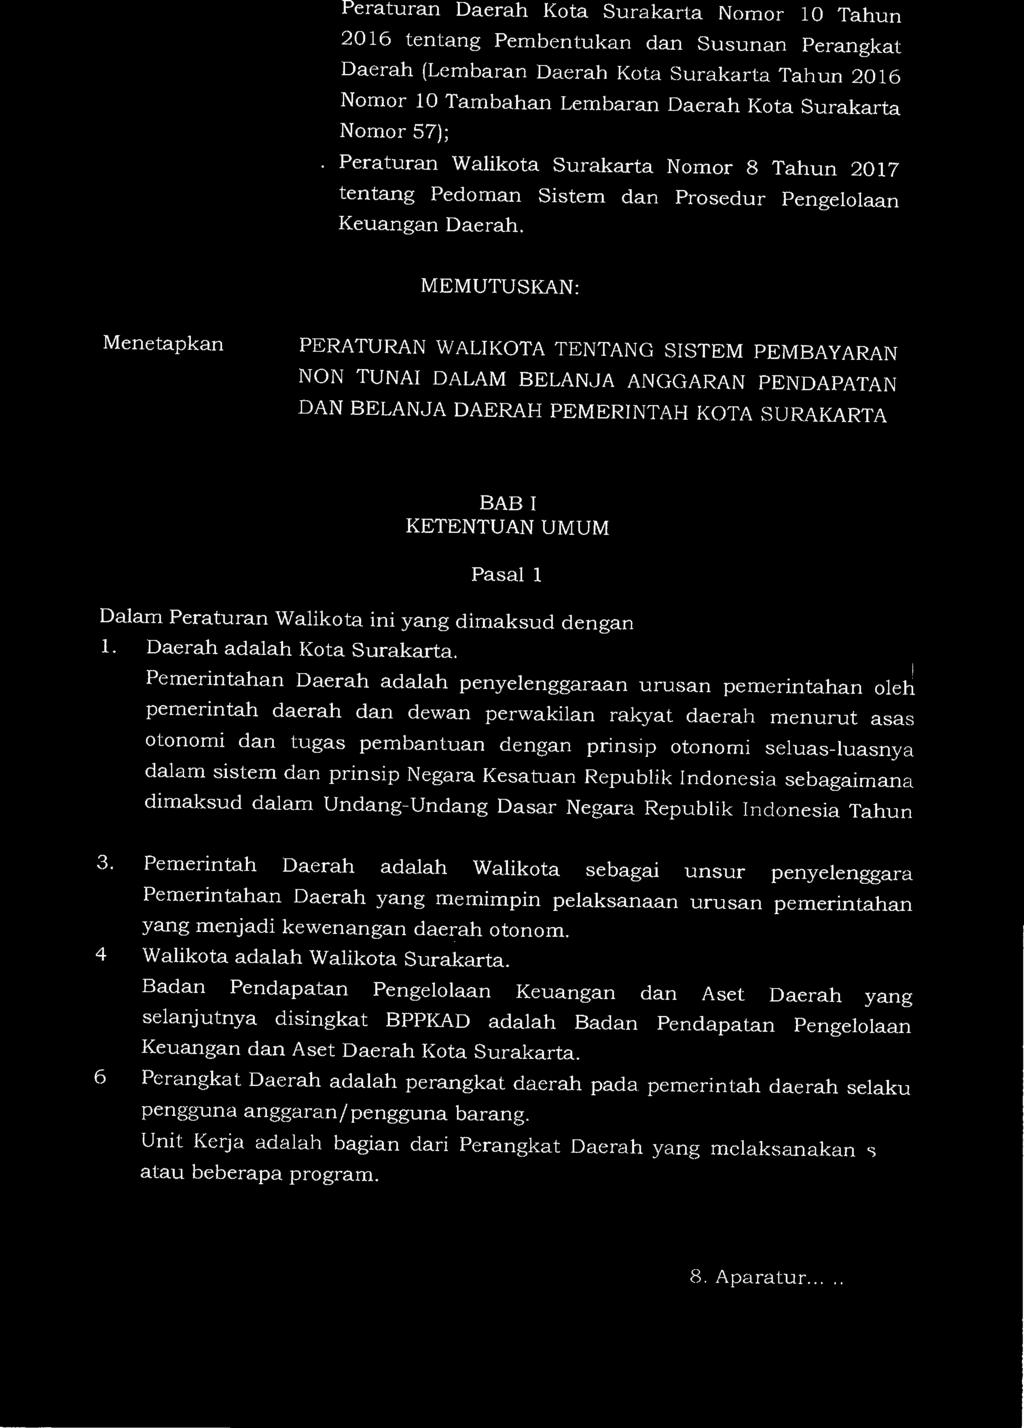 3 8. Peraturan Daerah Kota Surakarta Nomor 10 Tahun 2016 tentang Pembentukan dan Susunan Perangkat Daerah (Lembaran Daerah Kota Surakarta Tahun 2016 Nomor 10 Tambahan Lembaran Daerah Kota Surakarta